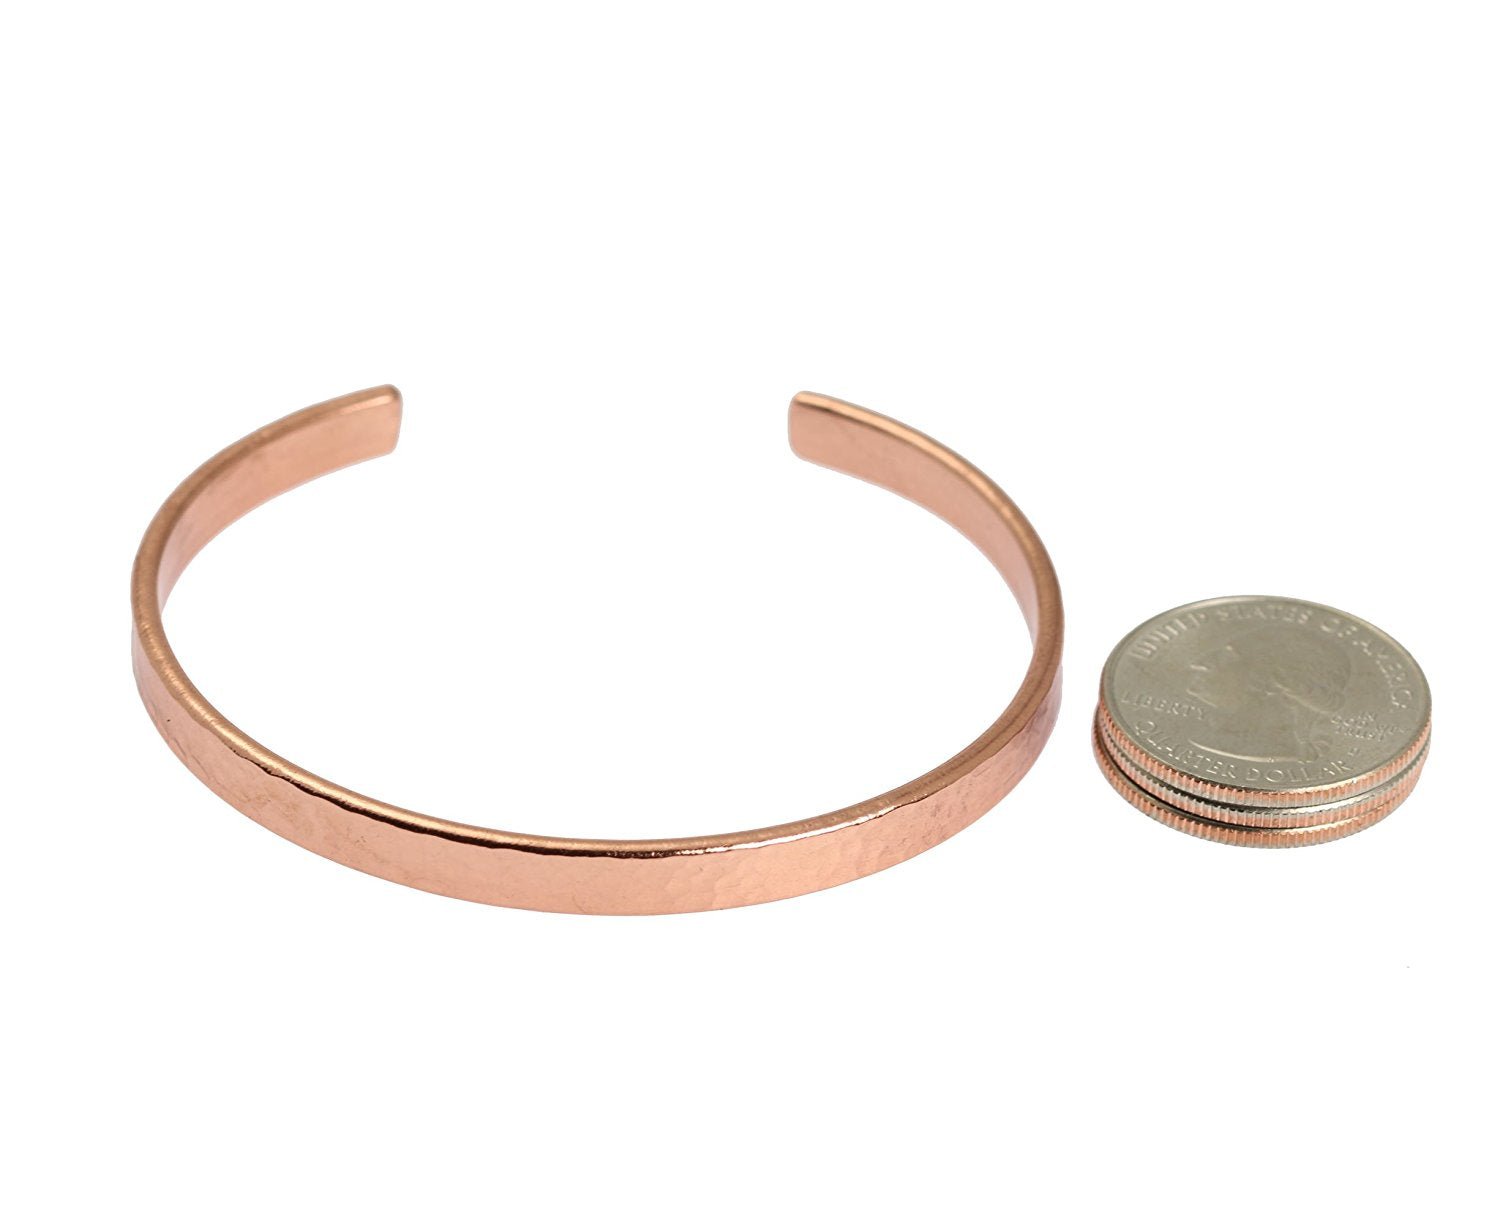 Cuffs - Men's Hammered Copper Cuff Bracelet - 4mm Wide